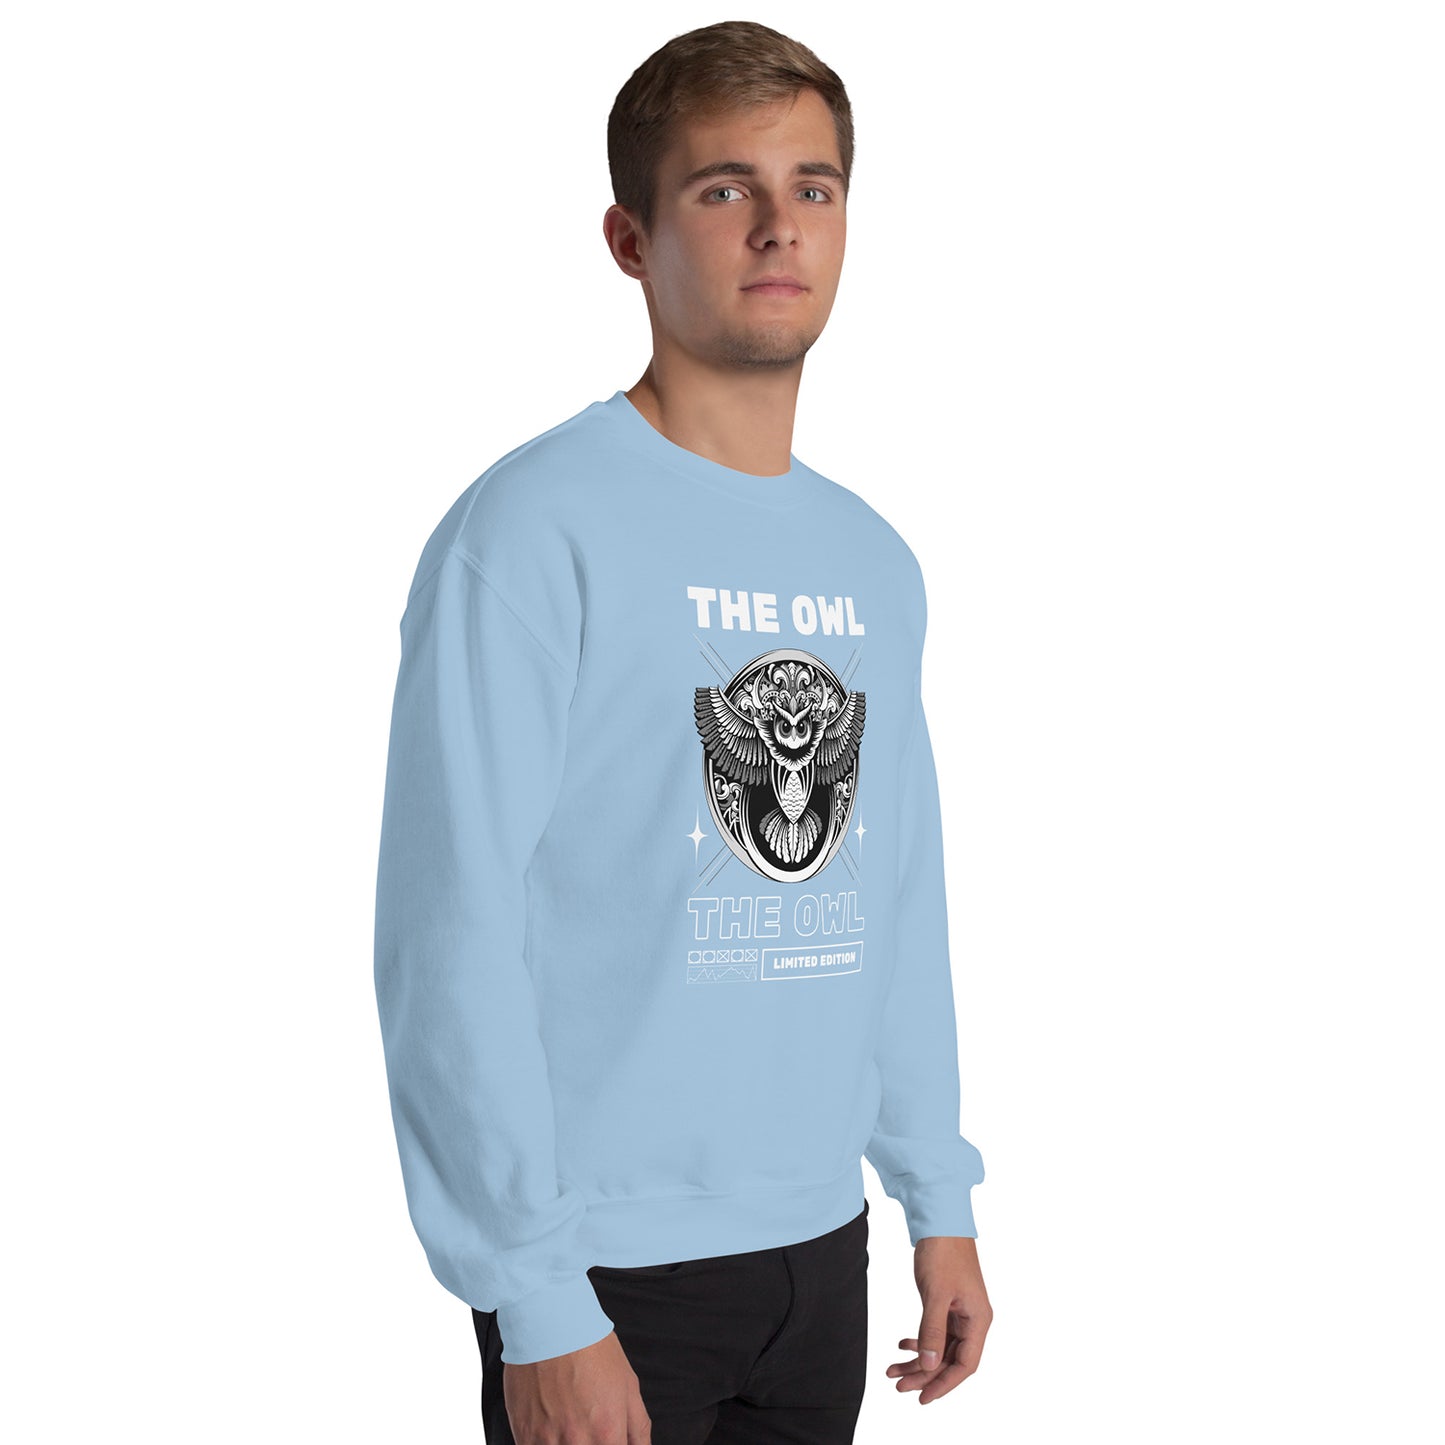 Men's Sweatshirt Unique Fit Design sweatshirt